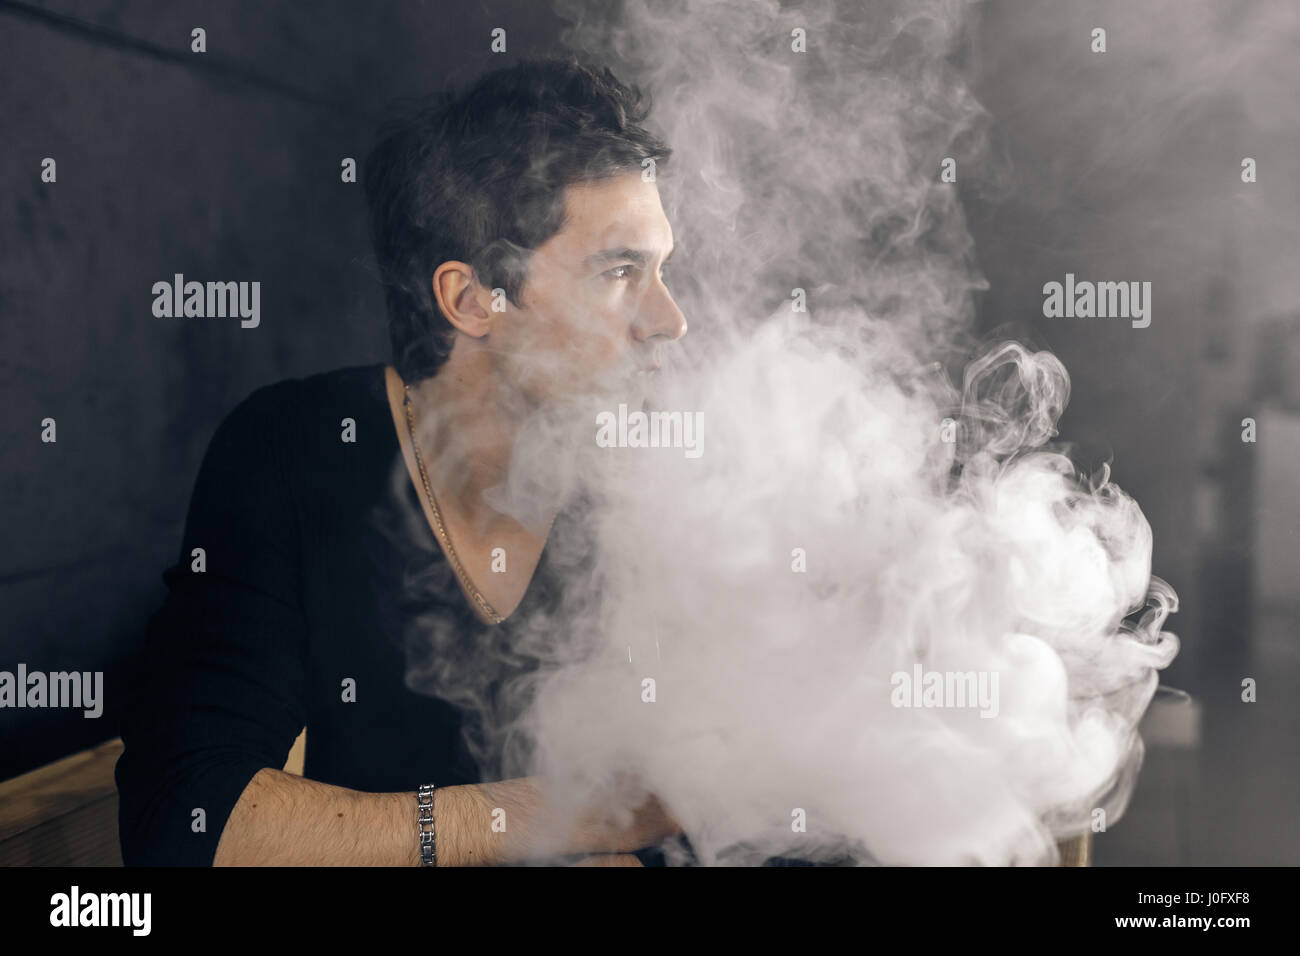 Uomo Vaping tenendo un mod. Una nuvola di vapore. Sfondo nero. Foto Stock